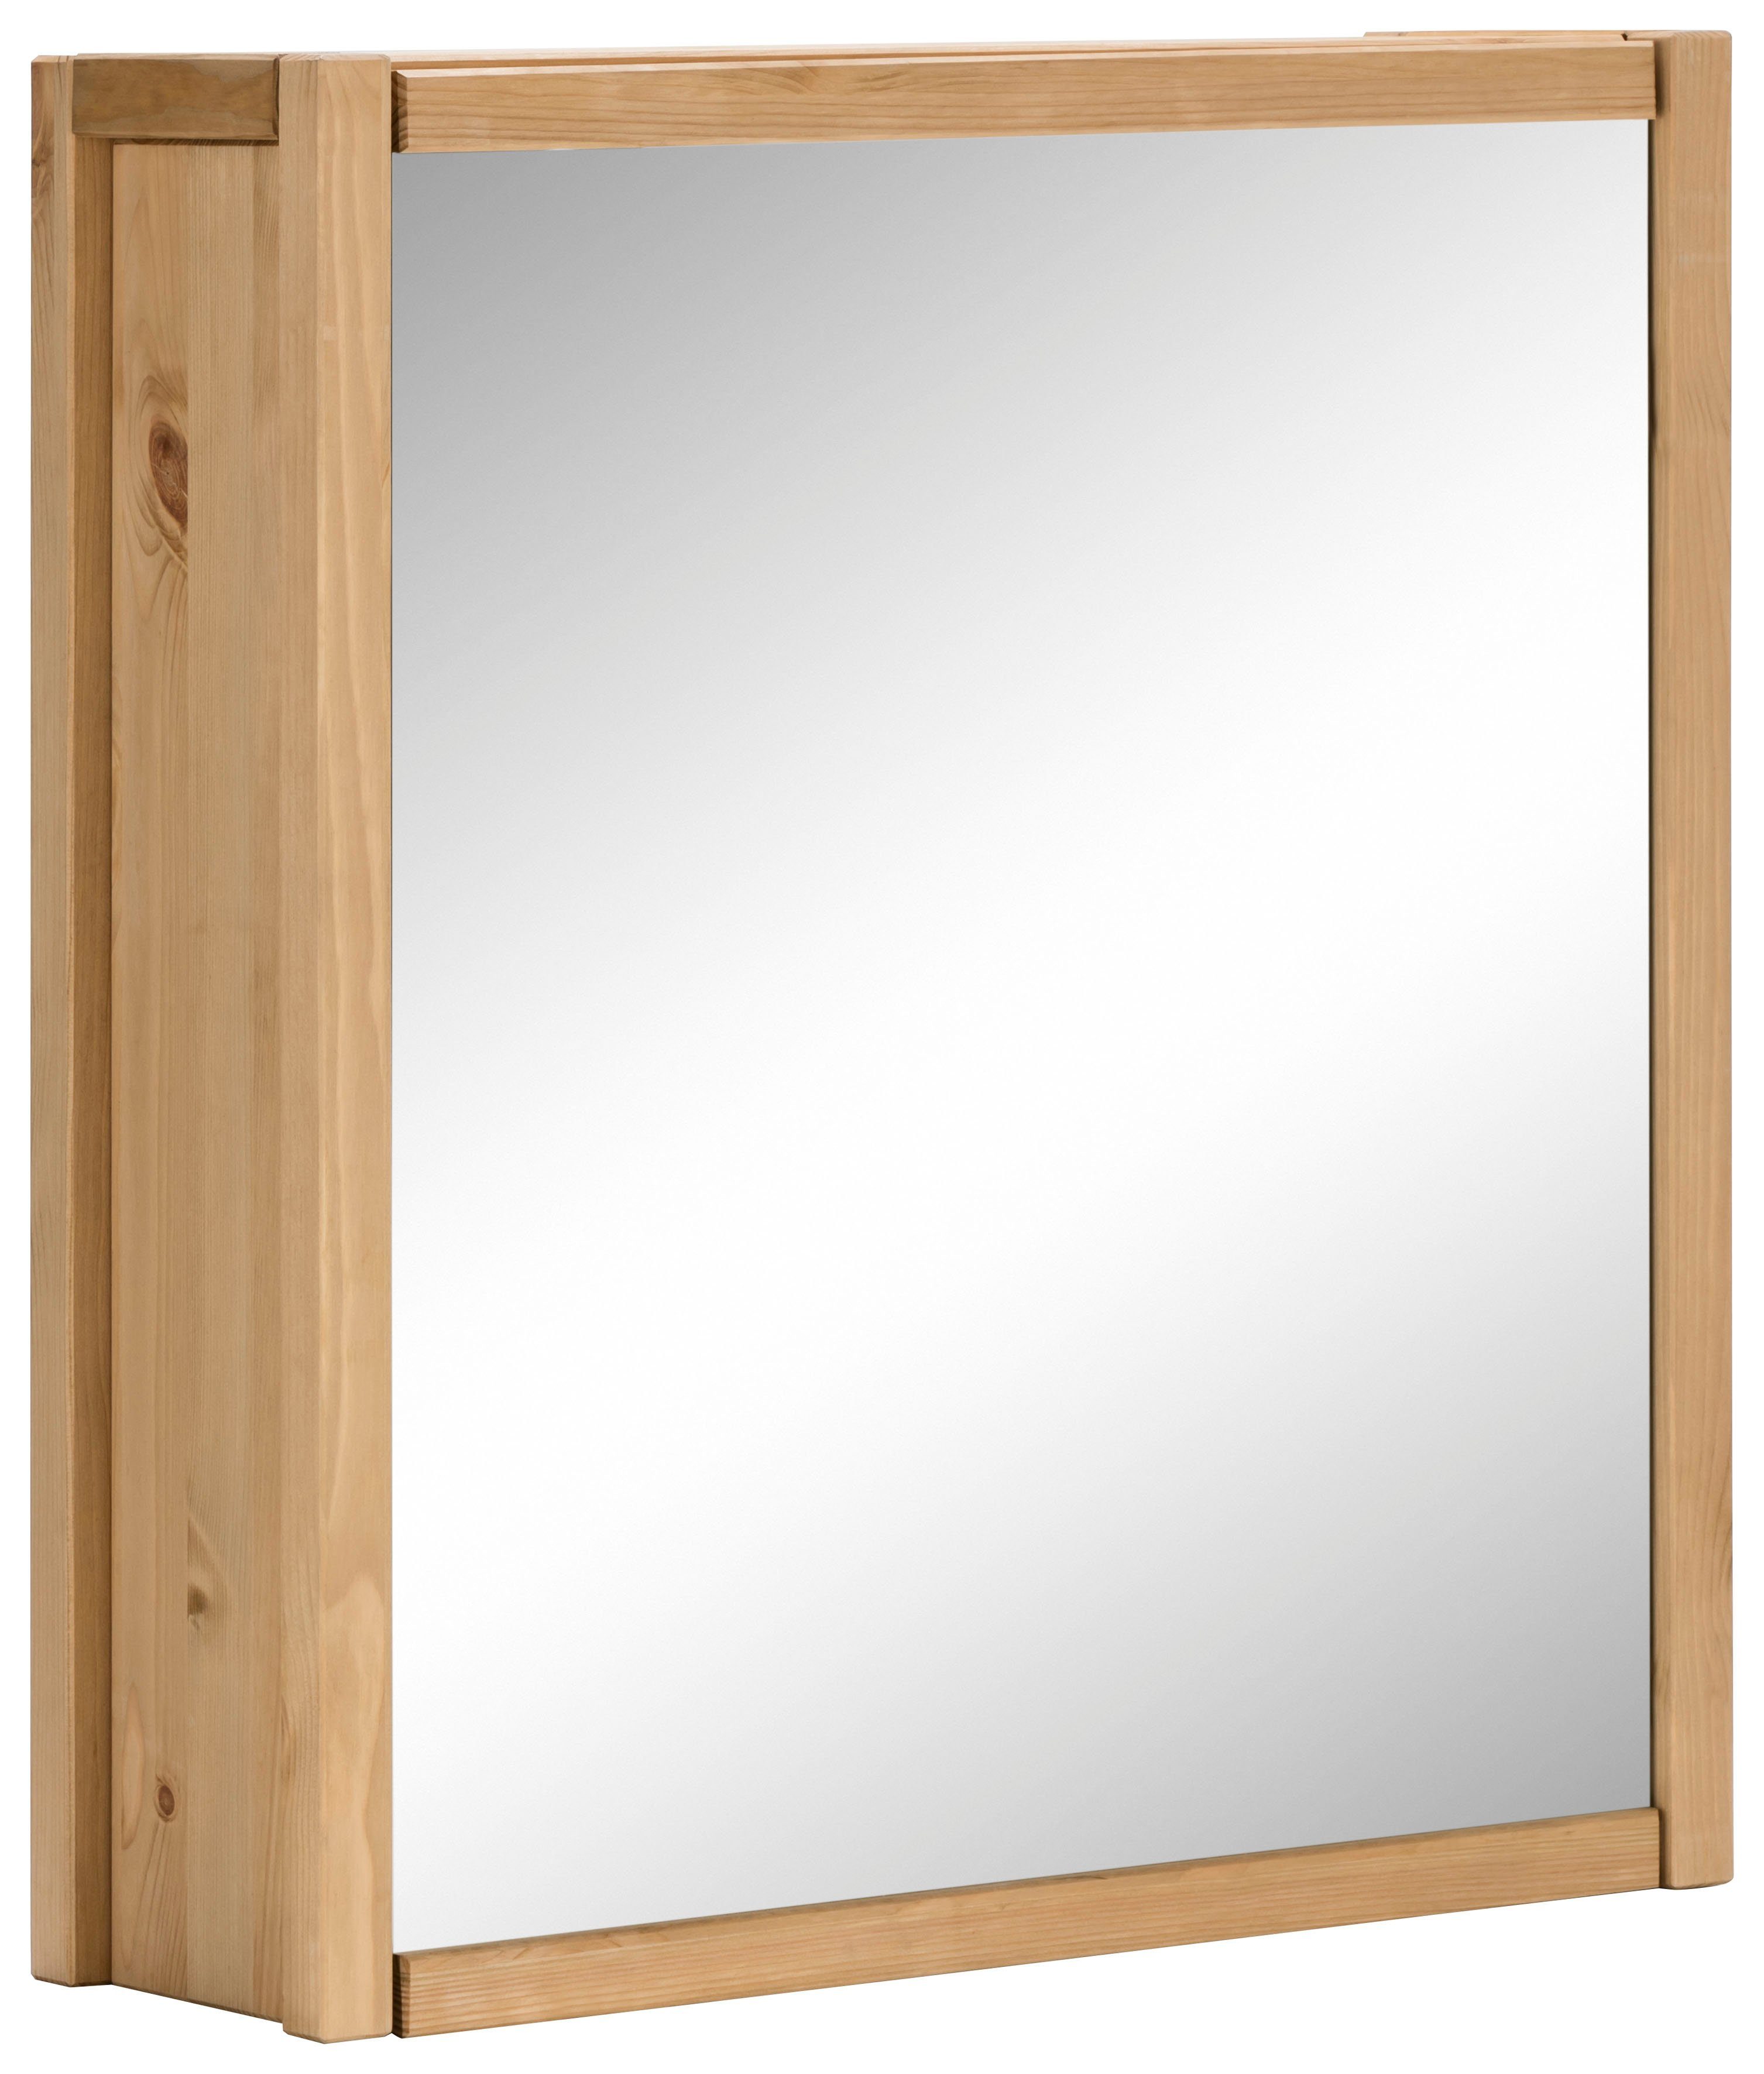 Home affaire Spiegelkast TINA Badkamermeubel, spiegel, breedte 61,5 cm, massief hout